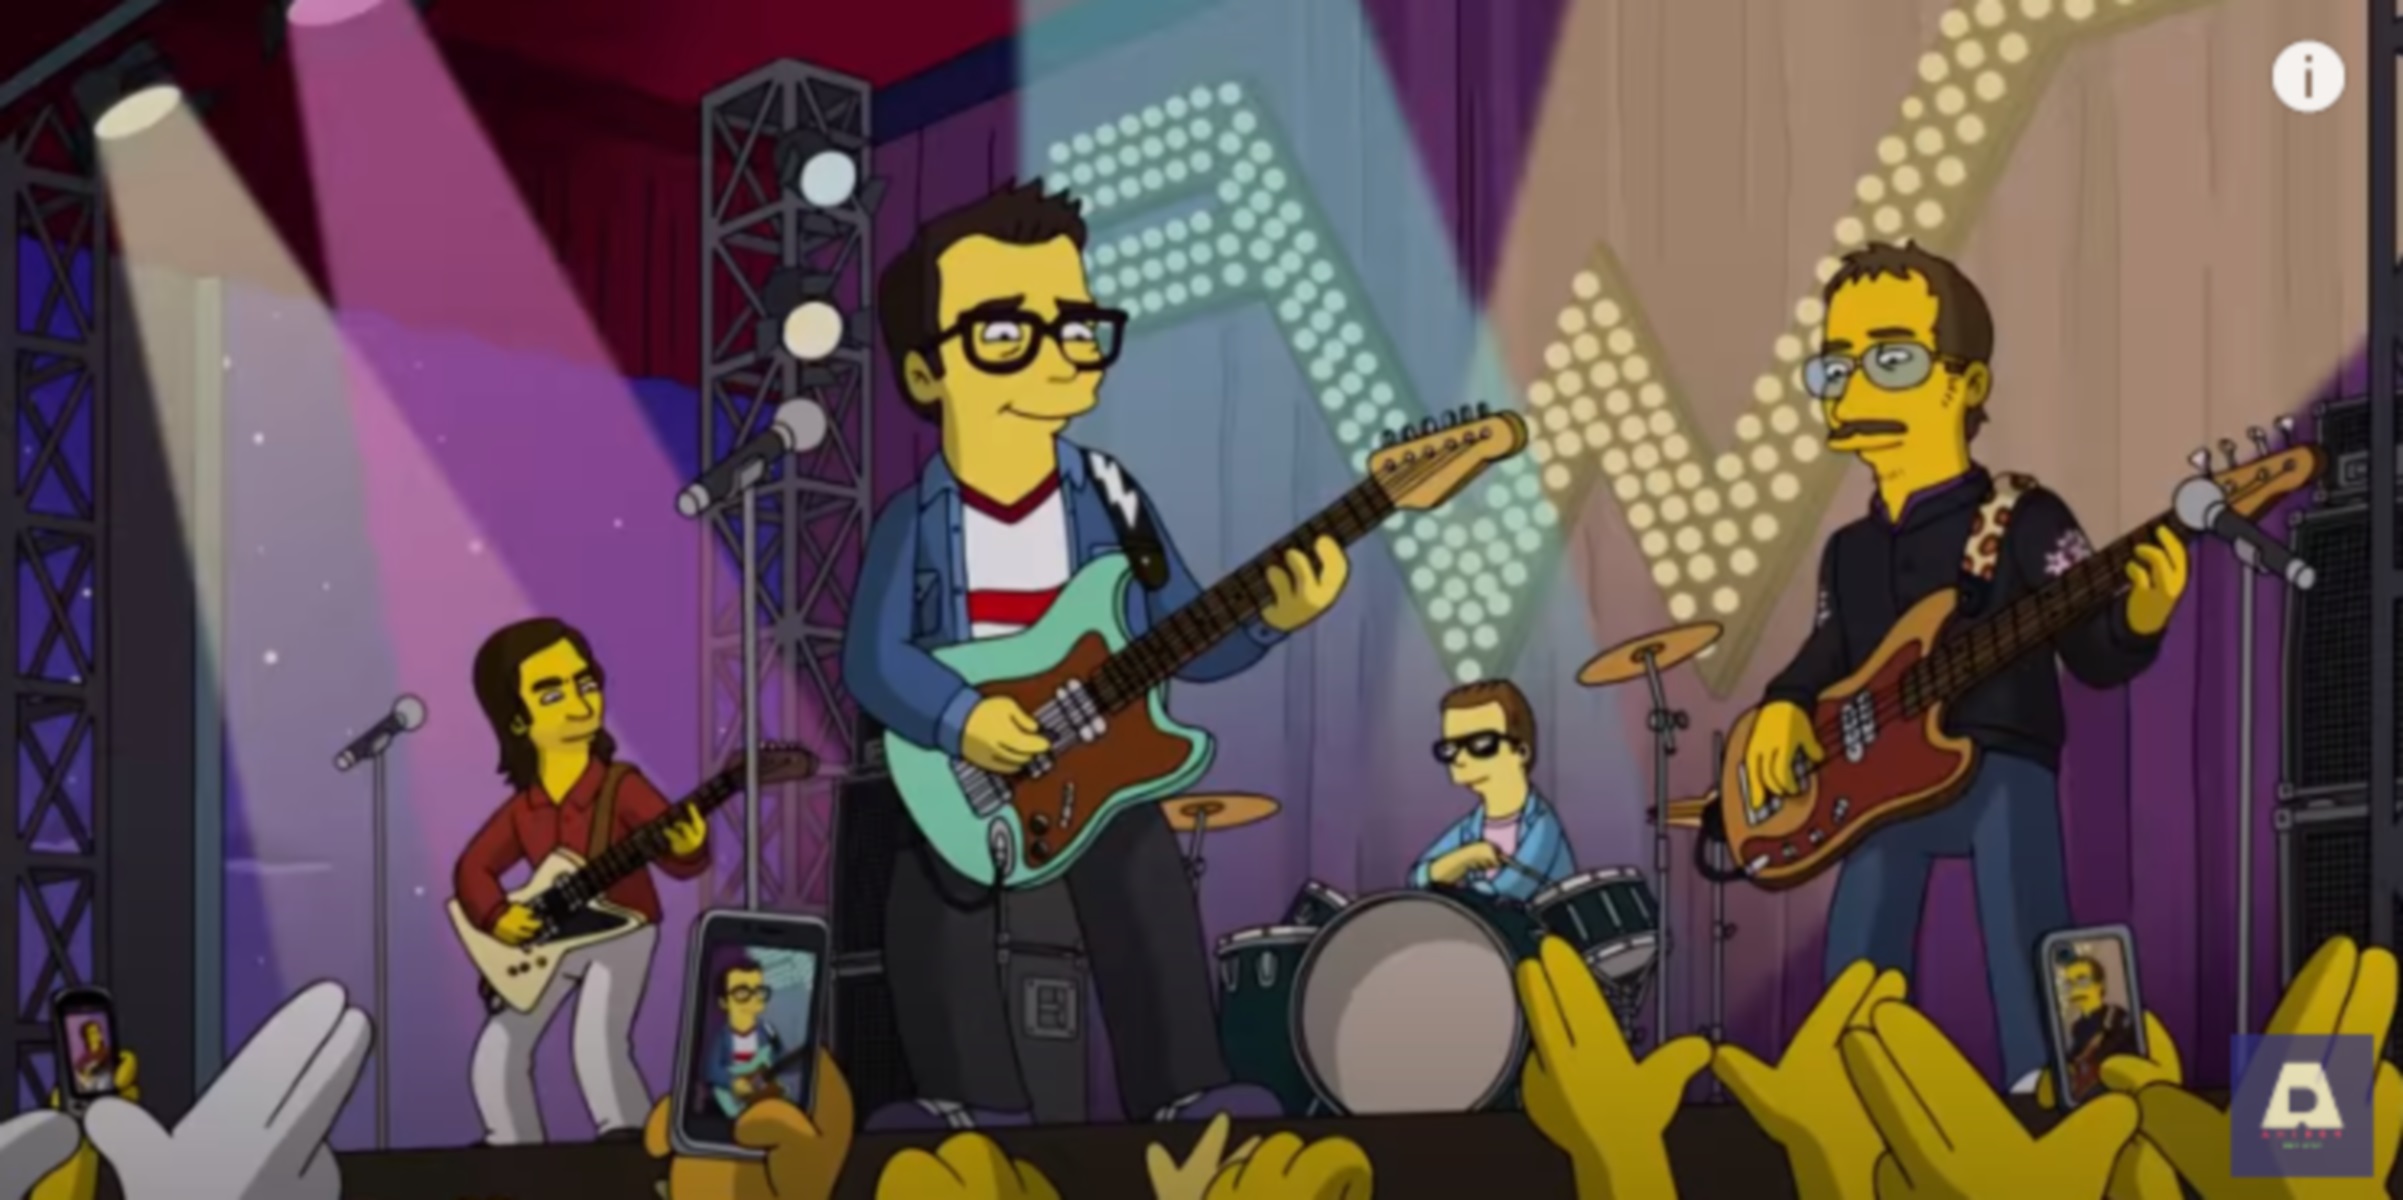 Οι Weezer στους “Simpsons” με νέο τραγούδι (video)